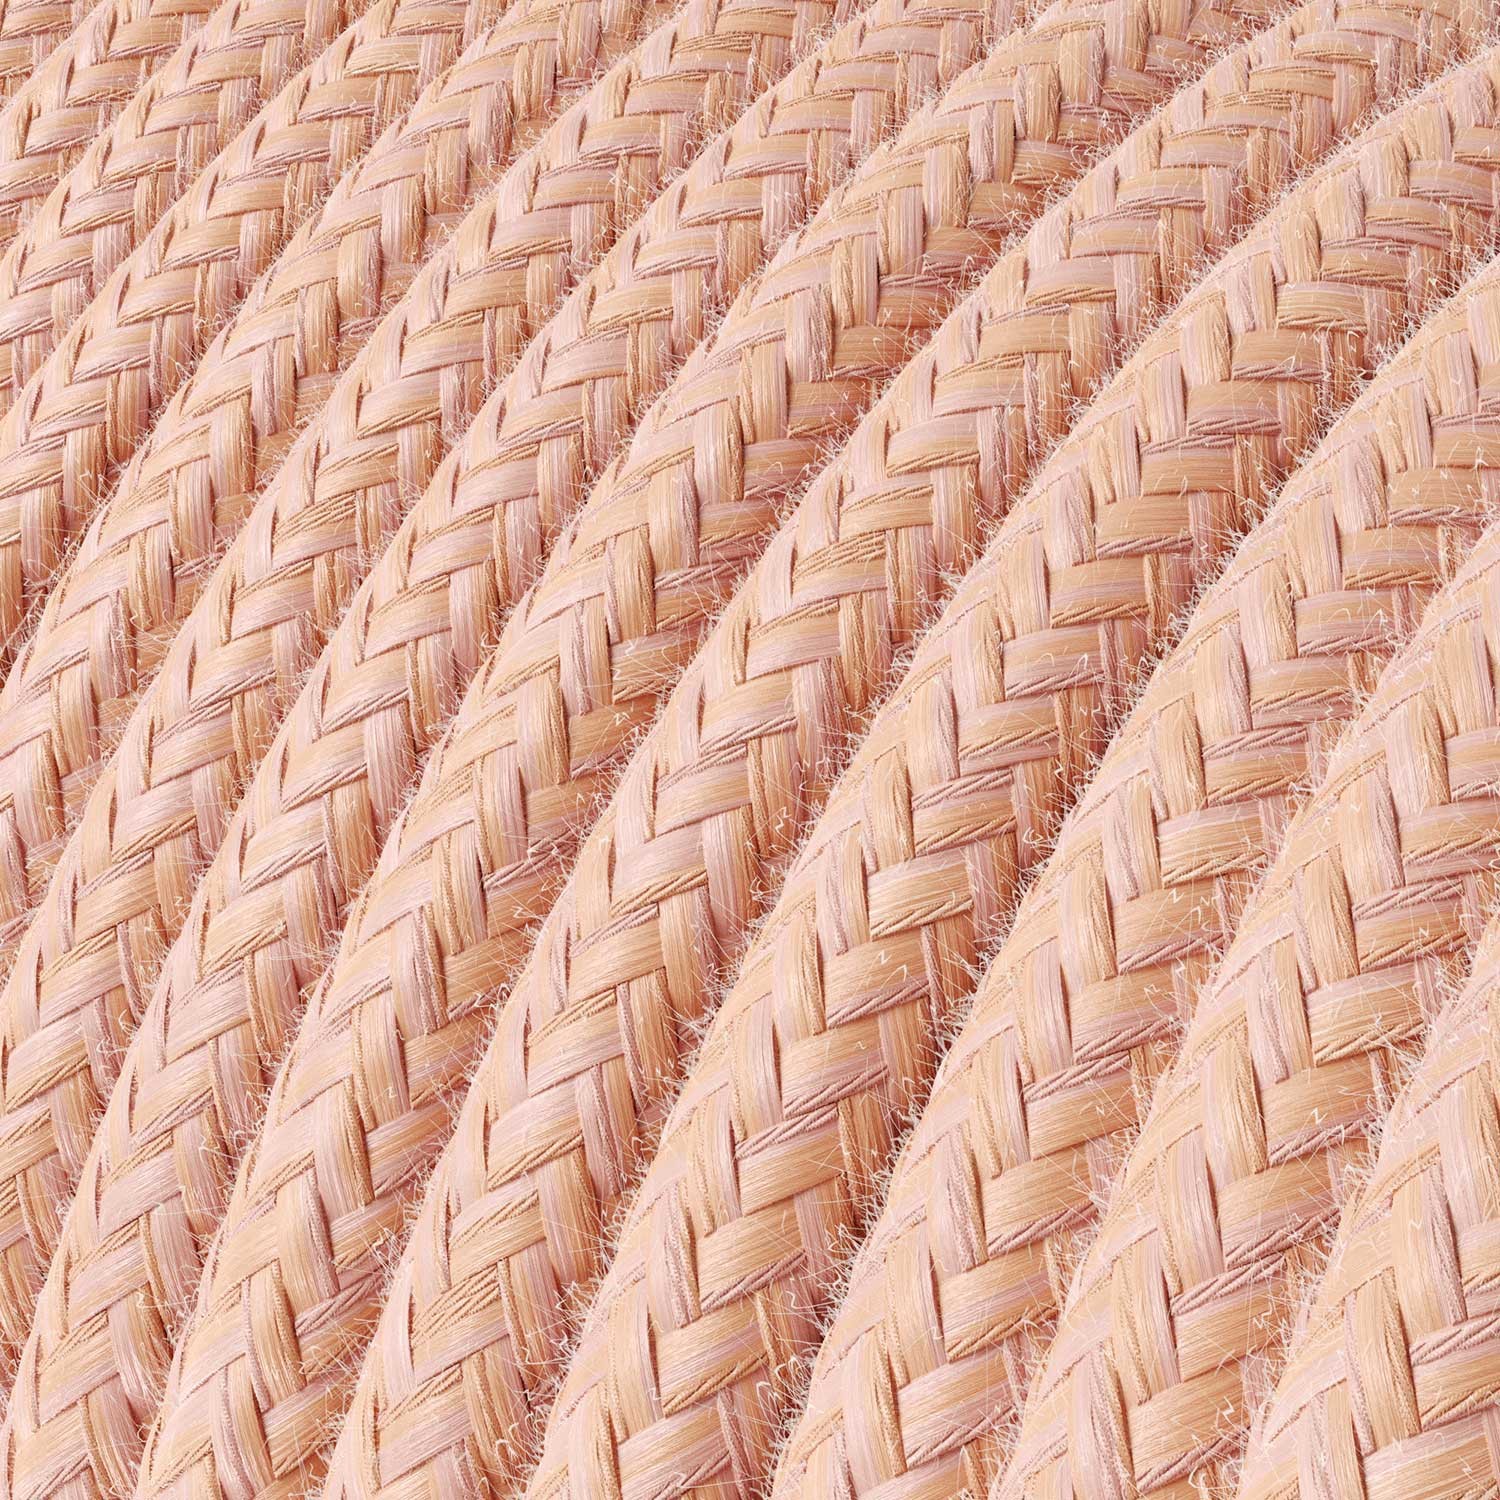 Okrúhly textilný elektrický kábel potiahnutý bavlnou - Lososový RX13